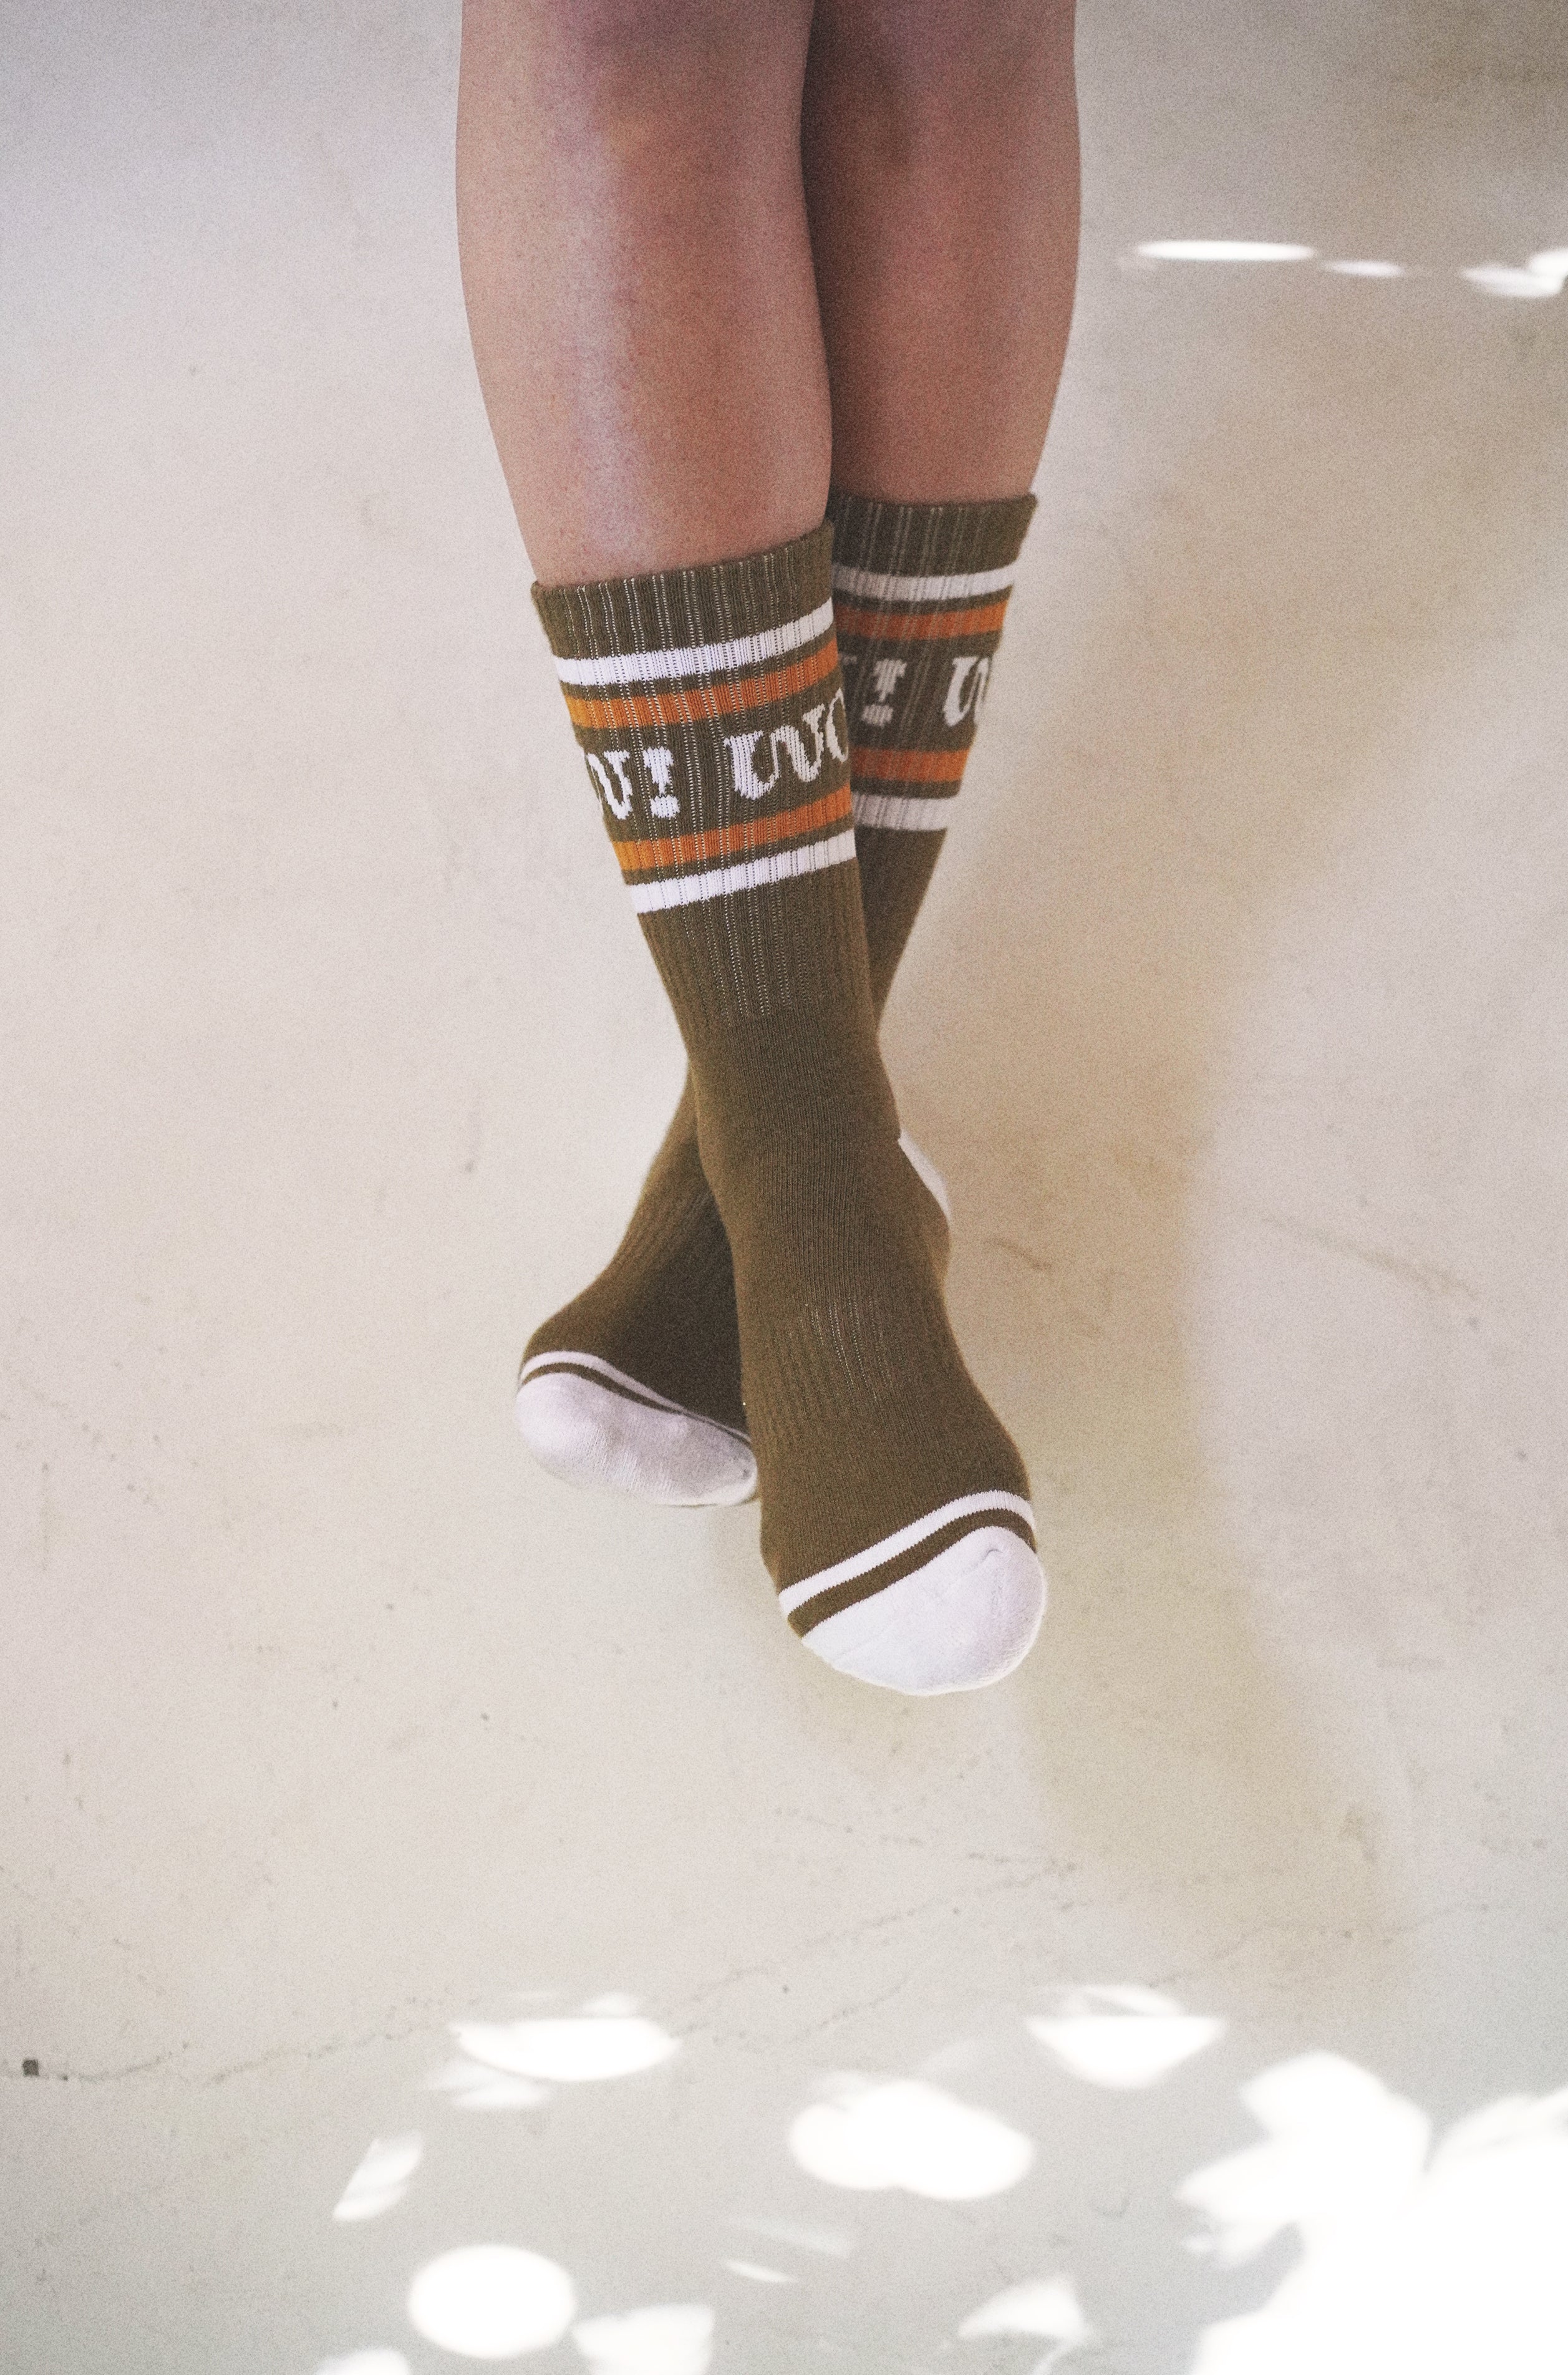 Socks Bundle – Real Fun, Wow!